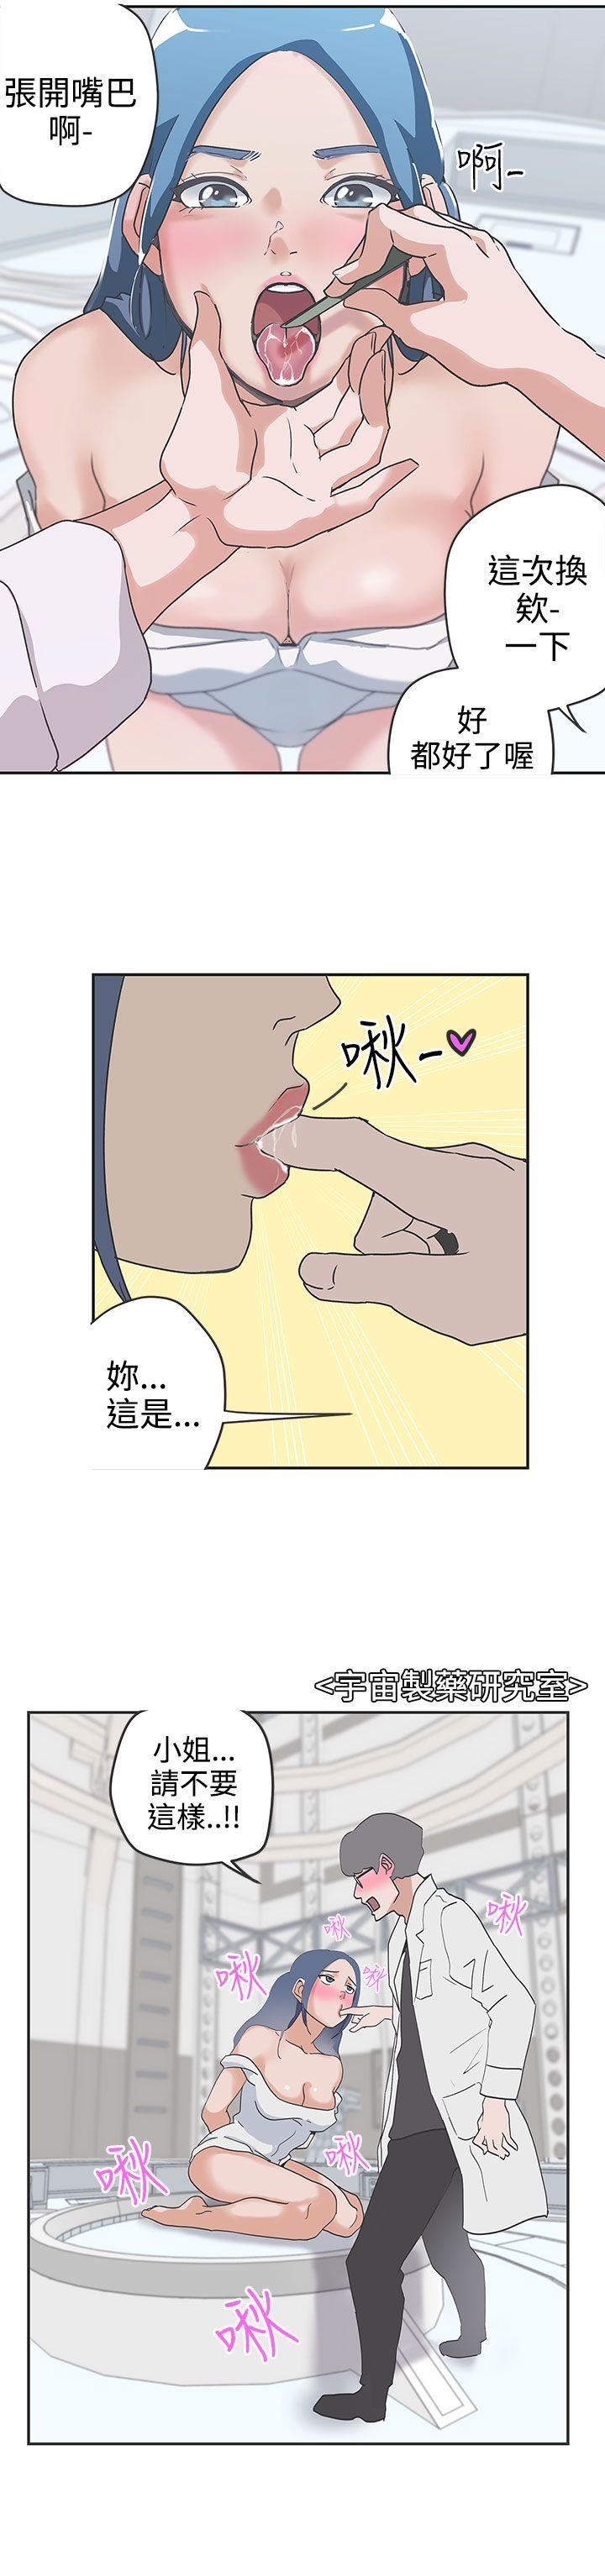 韩国污漫画 LOVE 愛的導航G 第47话 11